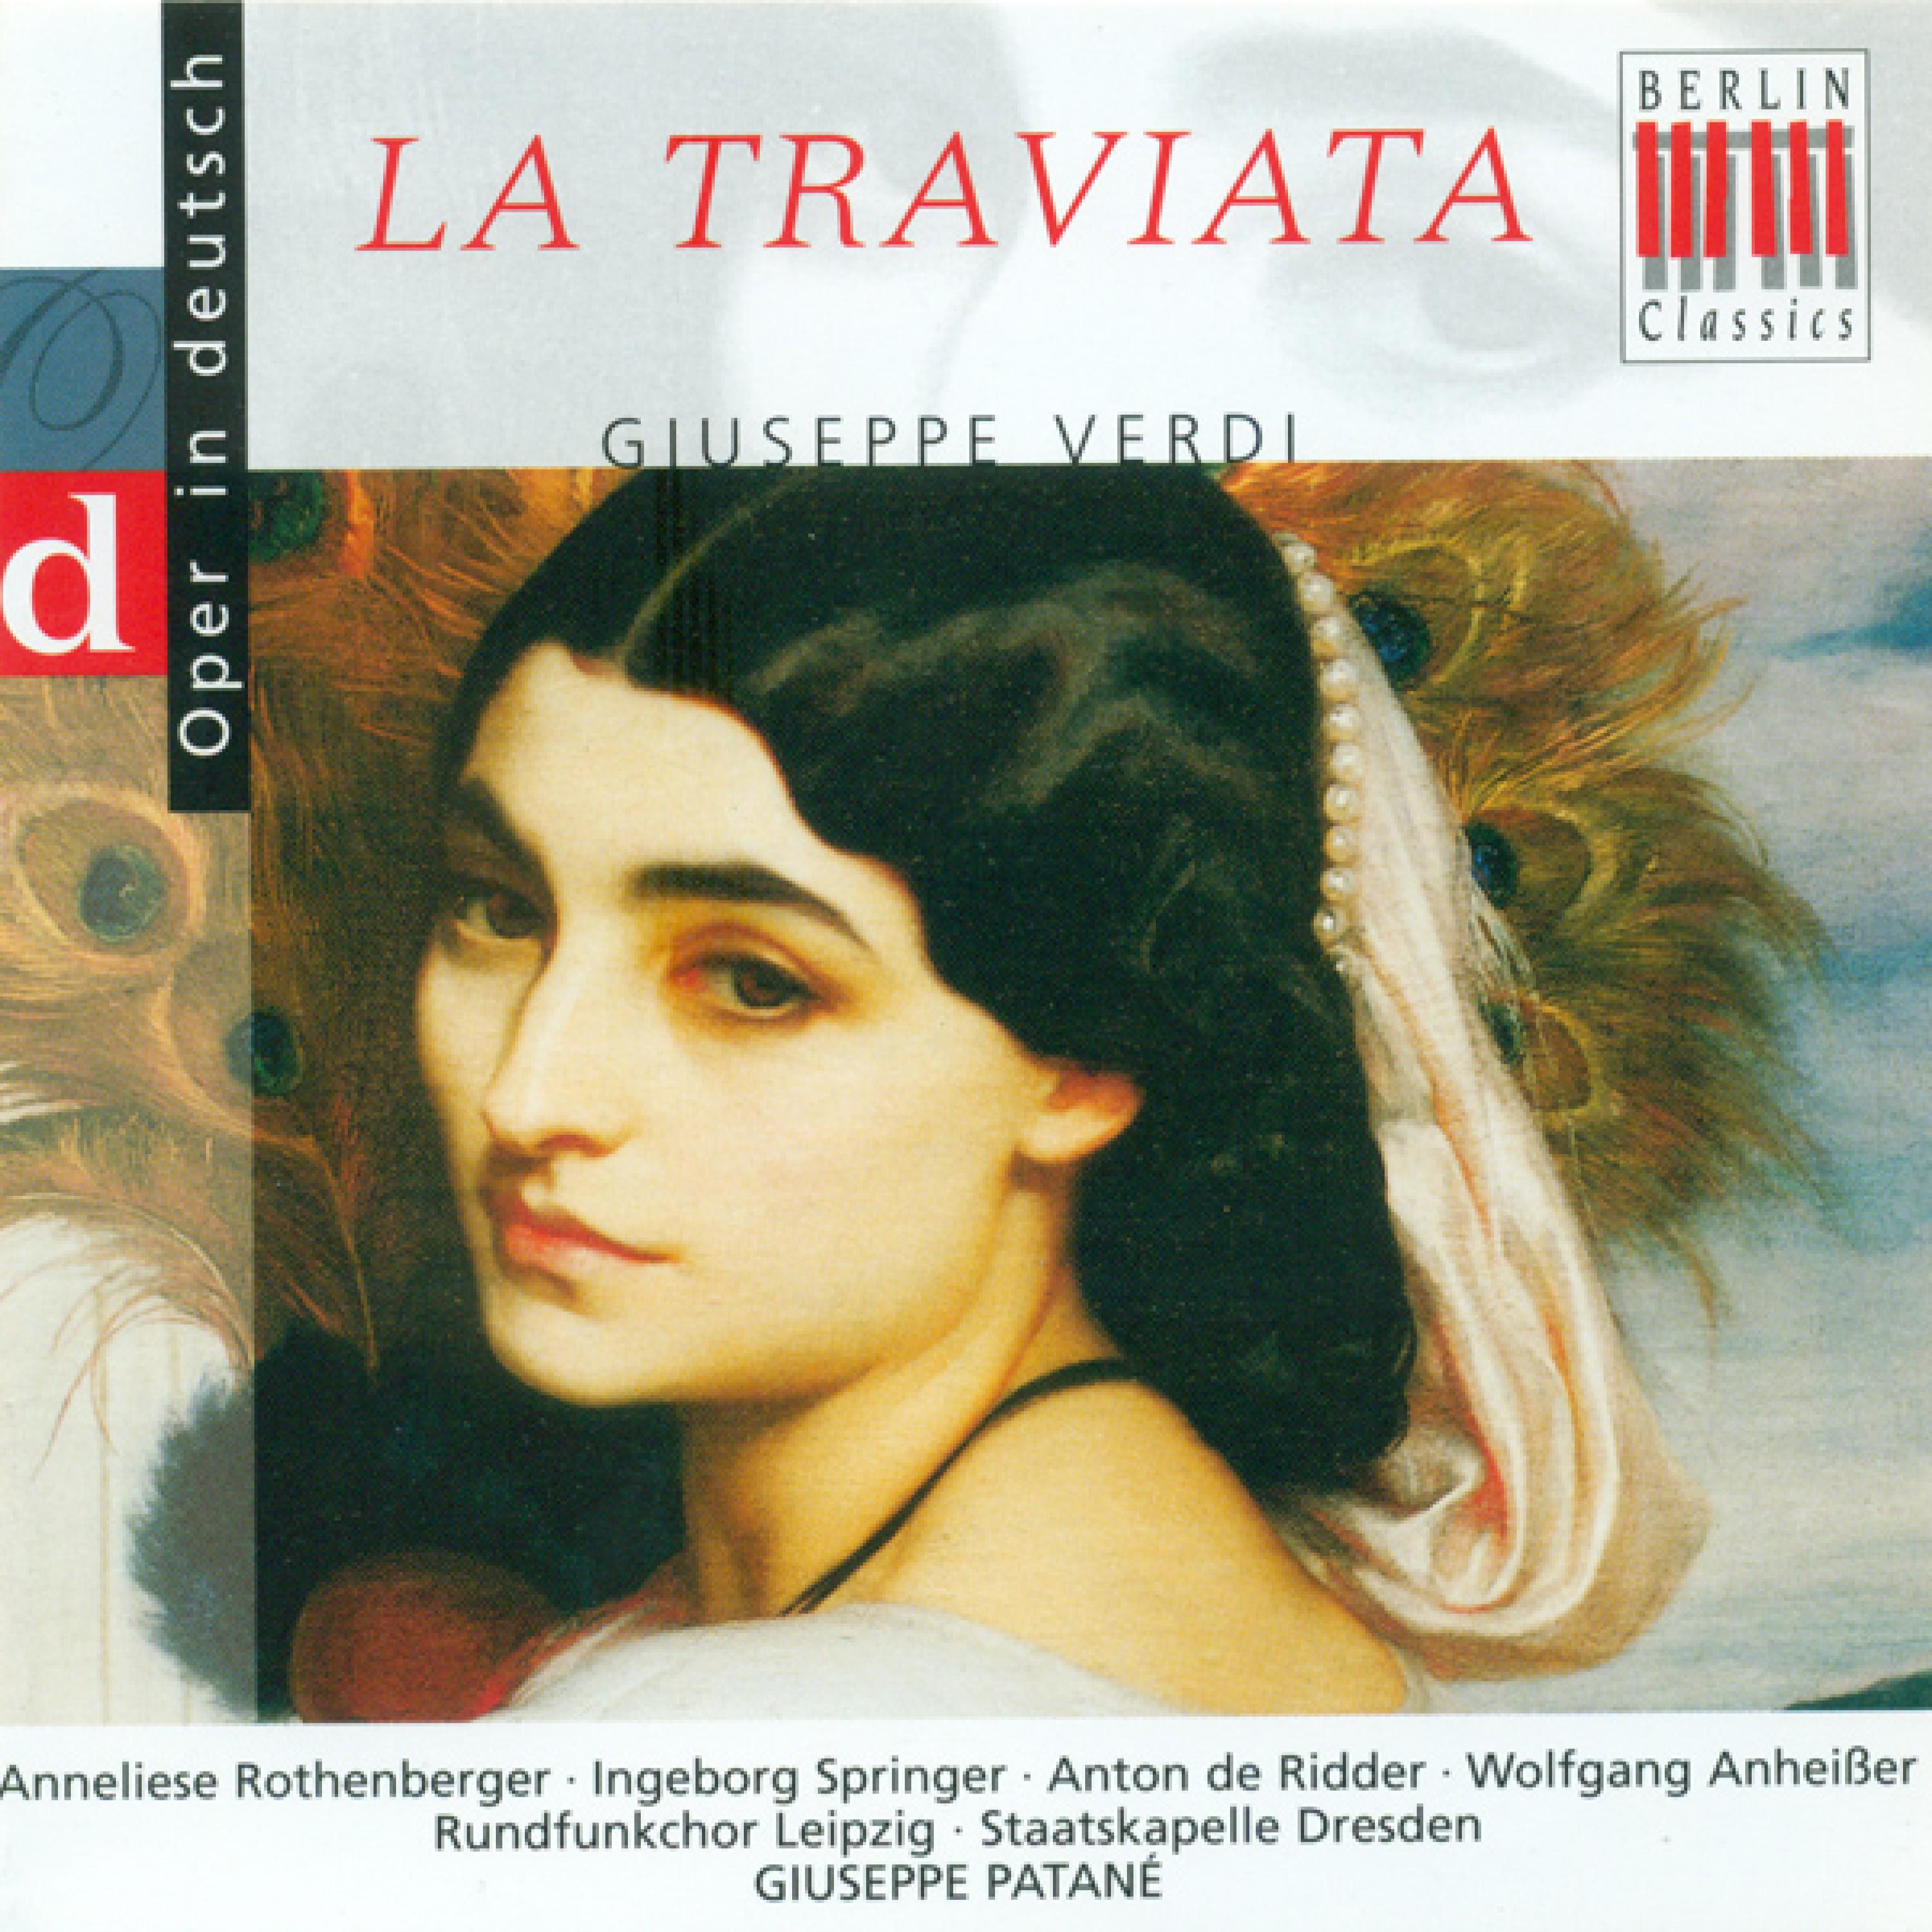 La Traviata, Act III: "Ich harre vergebens" - "Lebt wohl denn, ihr Gebilde"